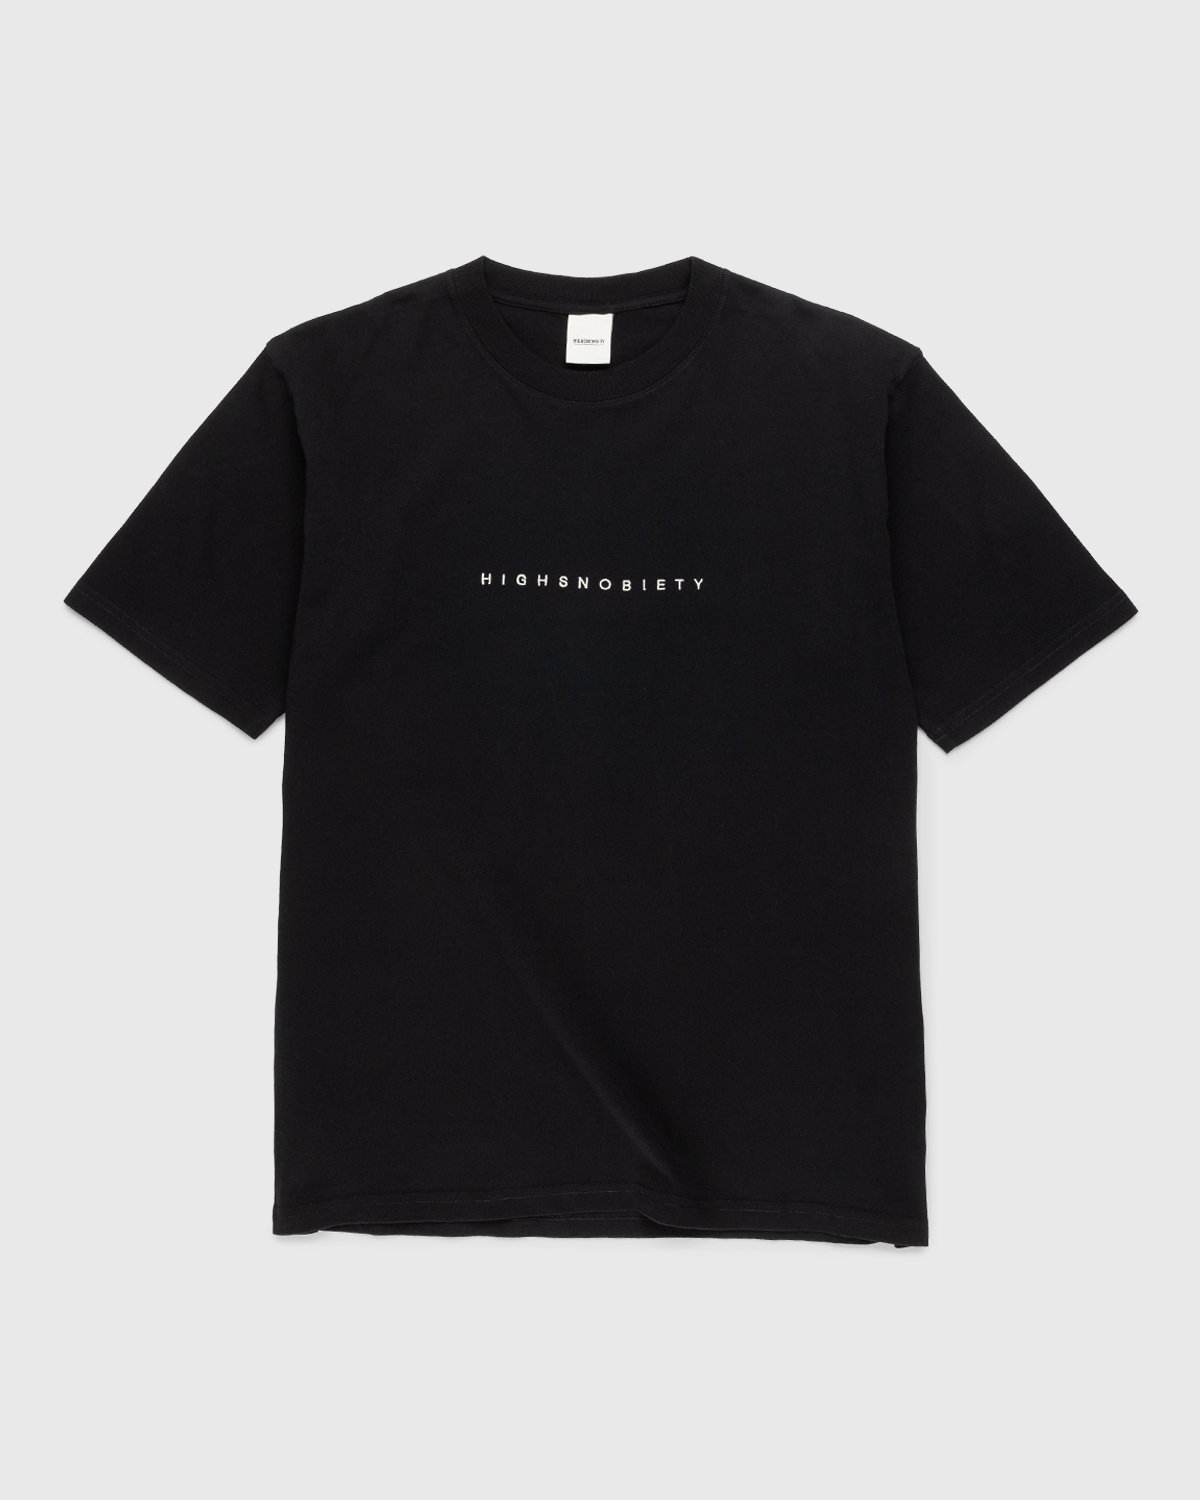 Highsnobiety – Staples T-Shirt Black | Highsnobiety Shop